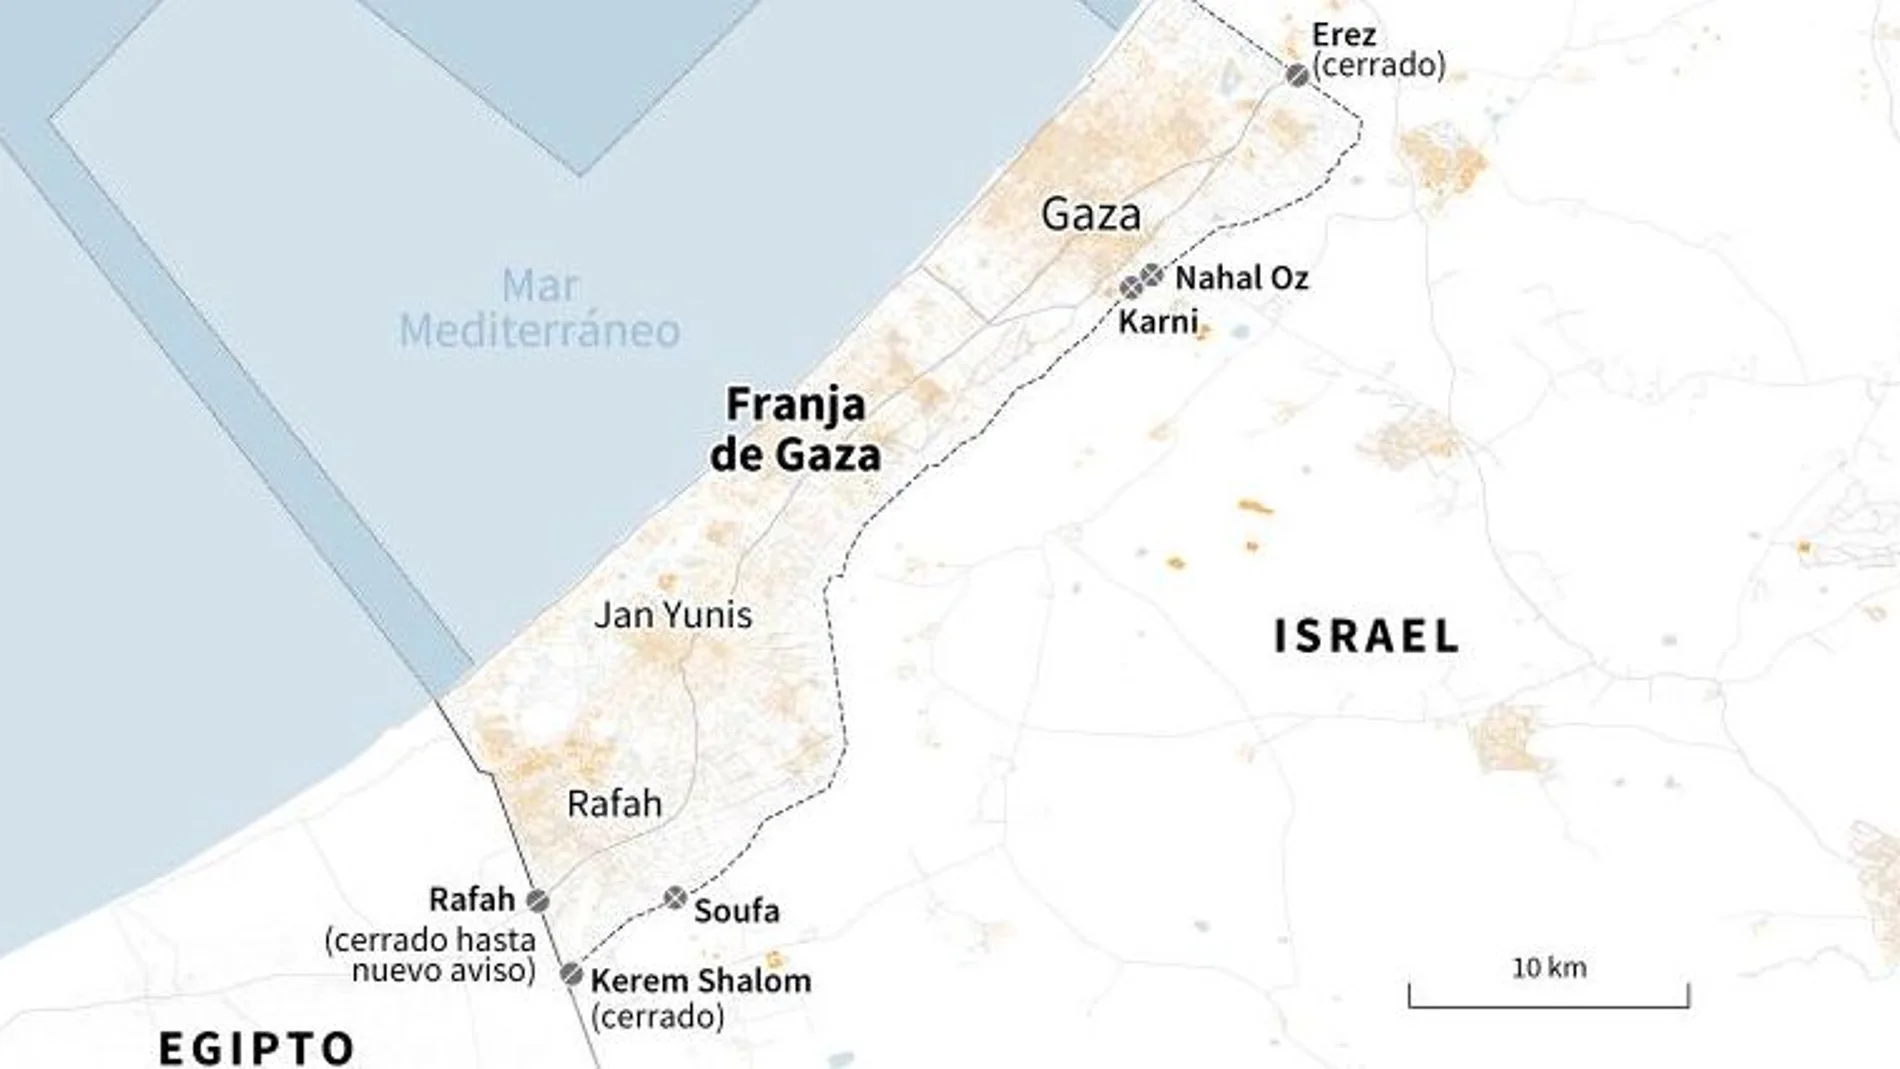 Datos básicos de Gaza, epicentro del actual conflicto armado entre palestinos e isralíes